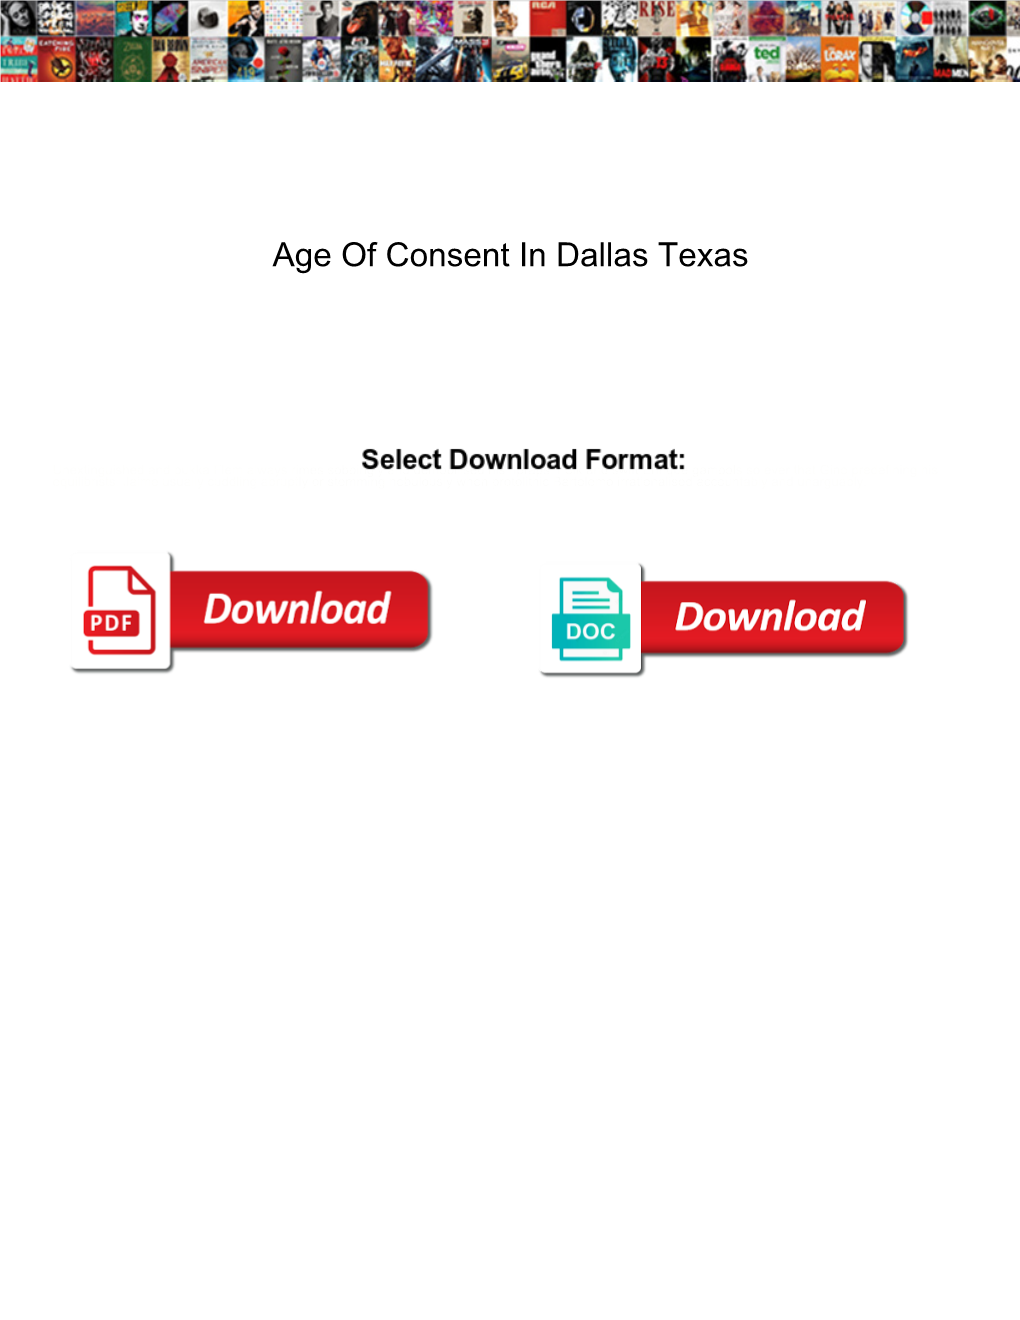 Age of Consent in Dallas Texas